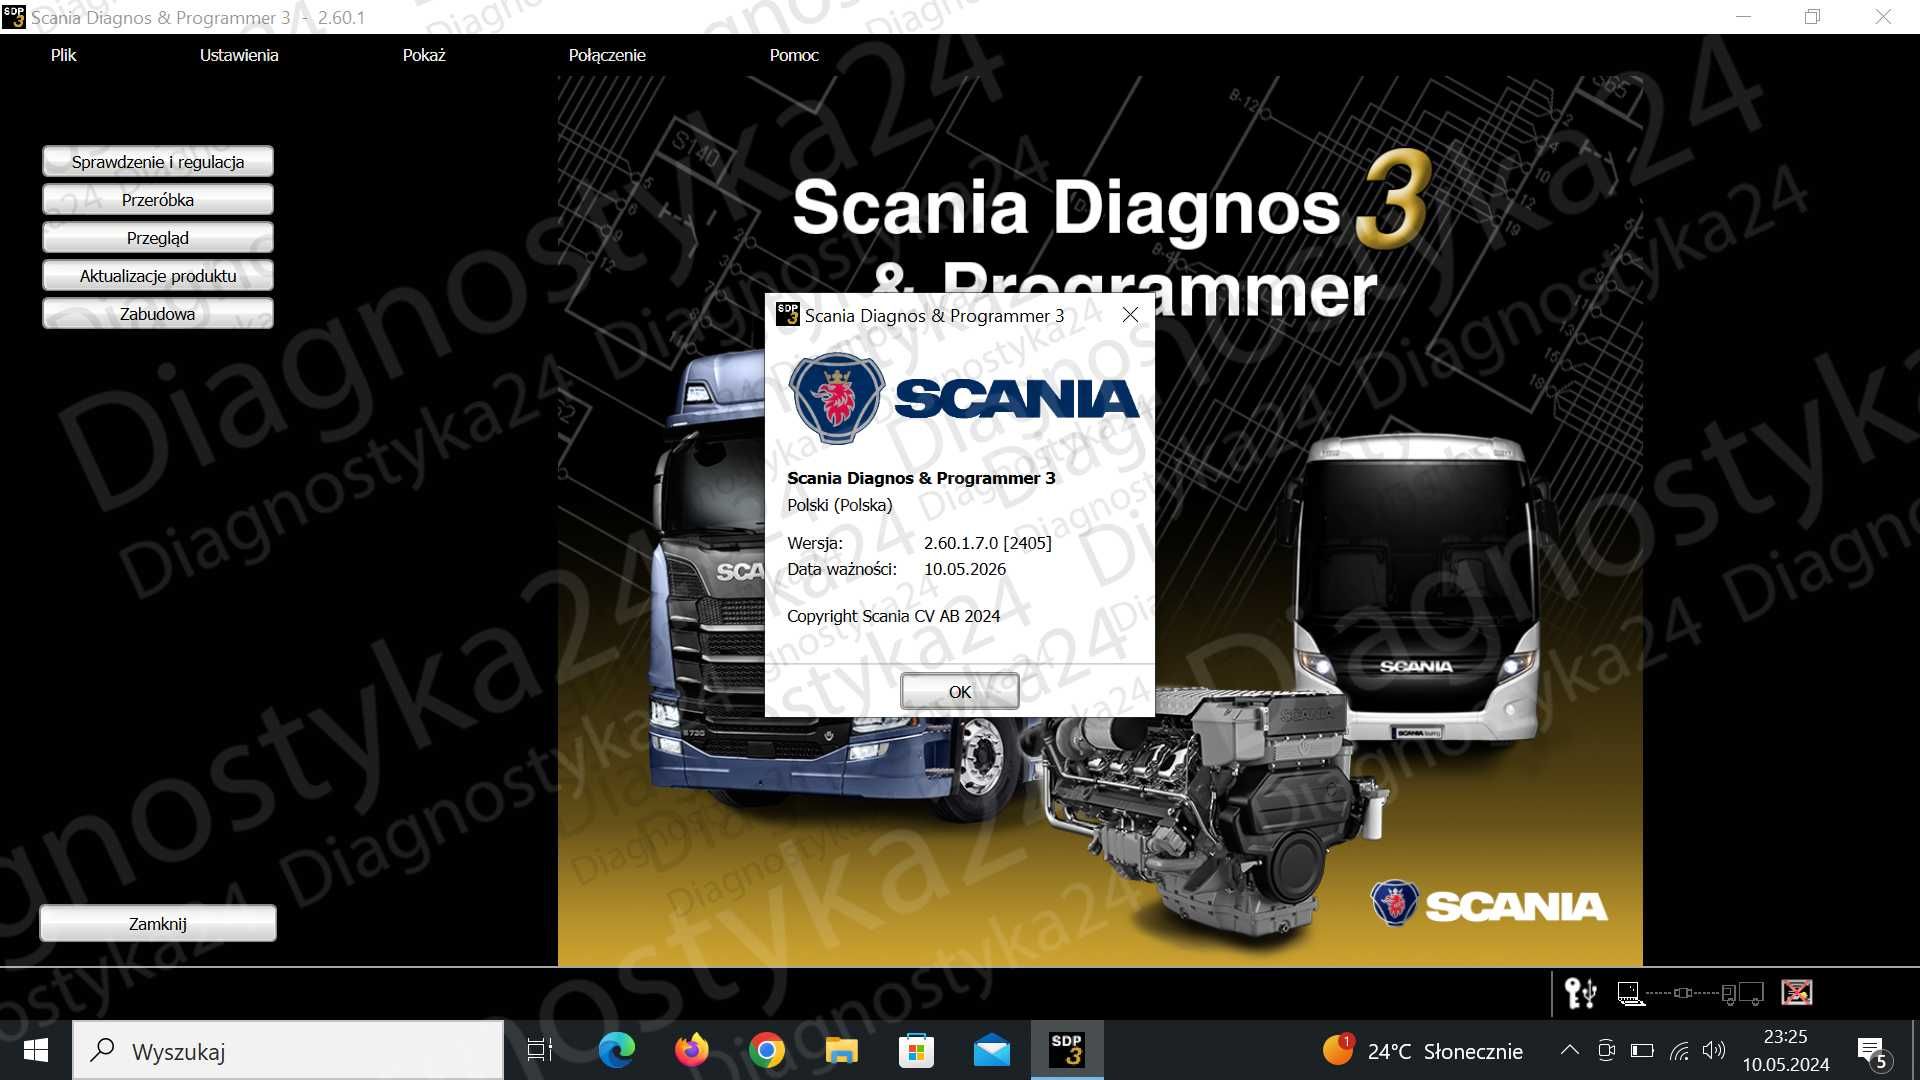 SCANIA SDP3 Zestaw Diagnostyczny POZIOM SERWISOWY z Gwarancją + laptop